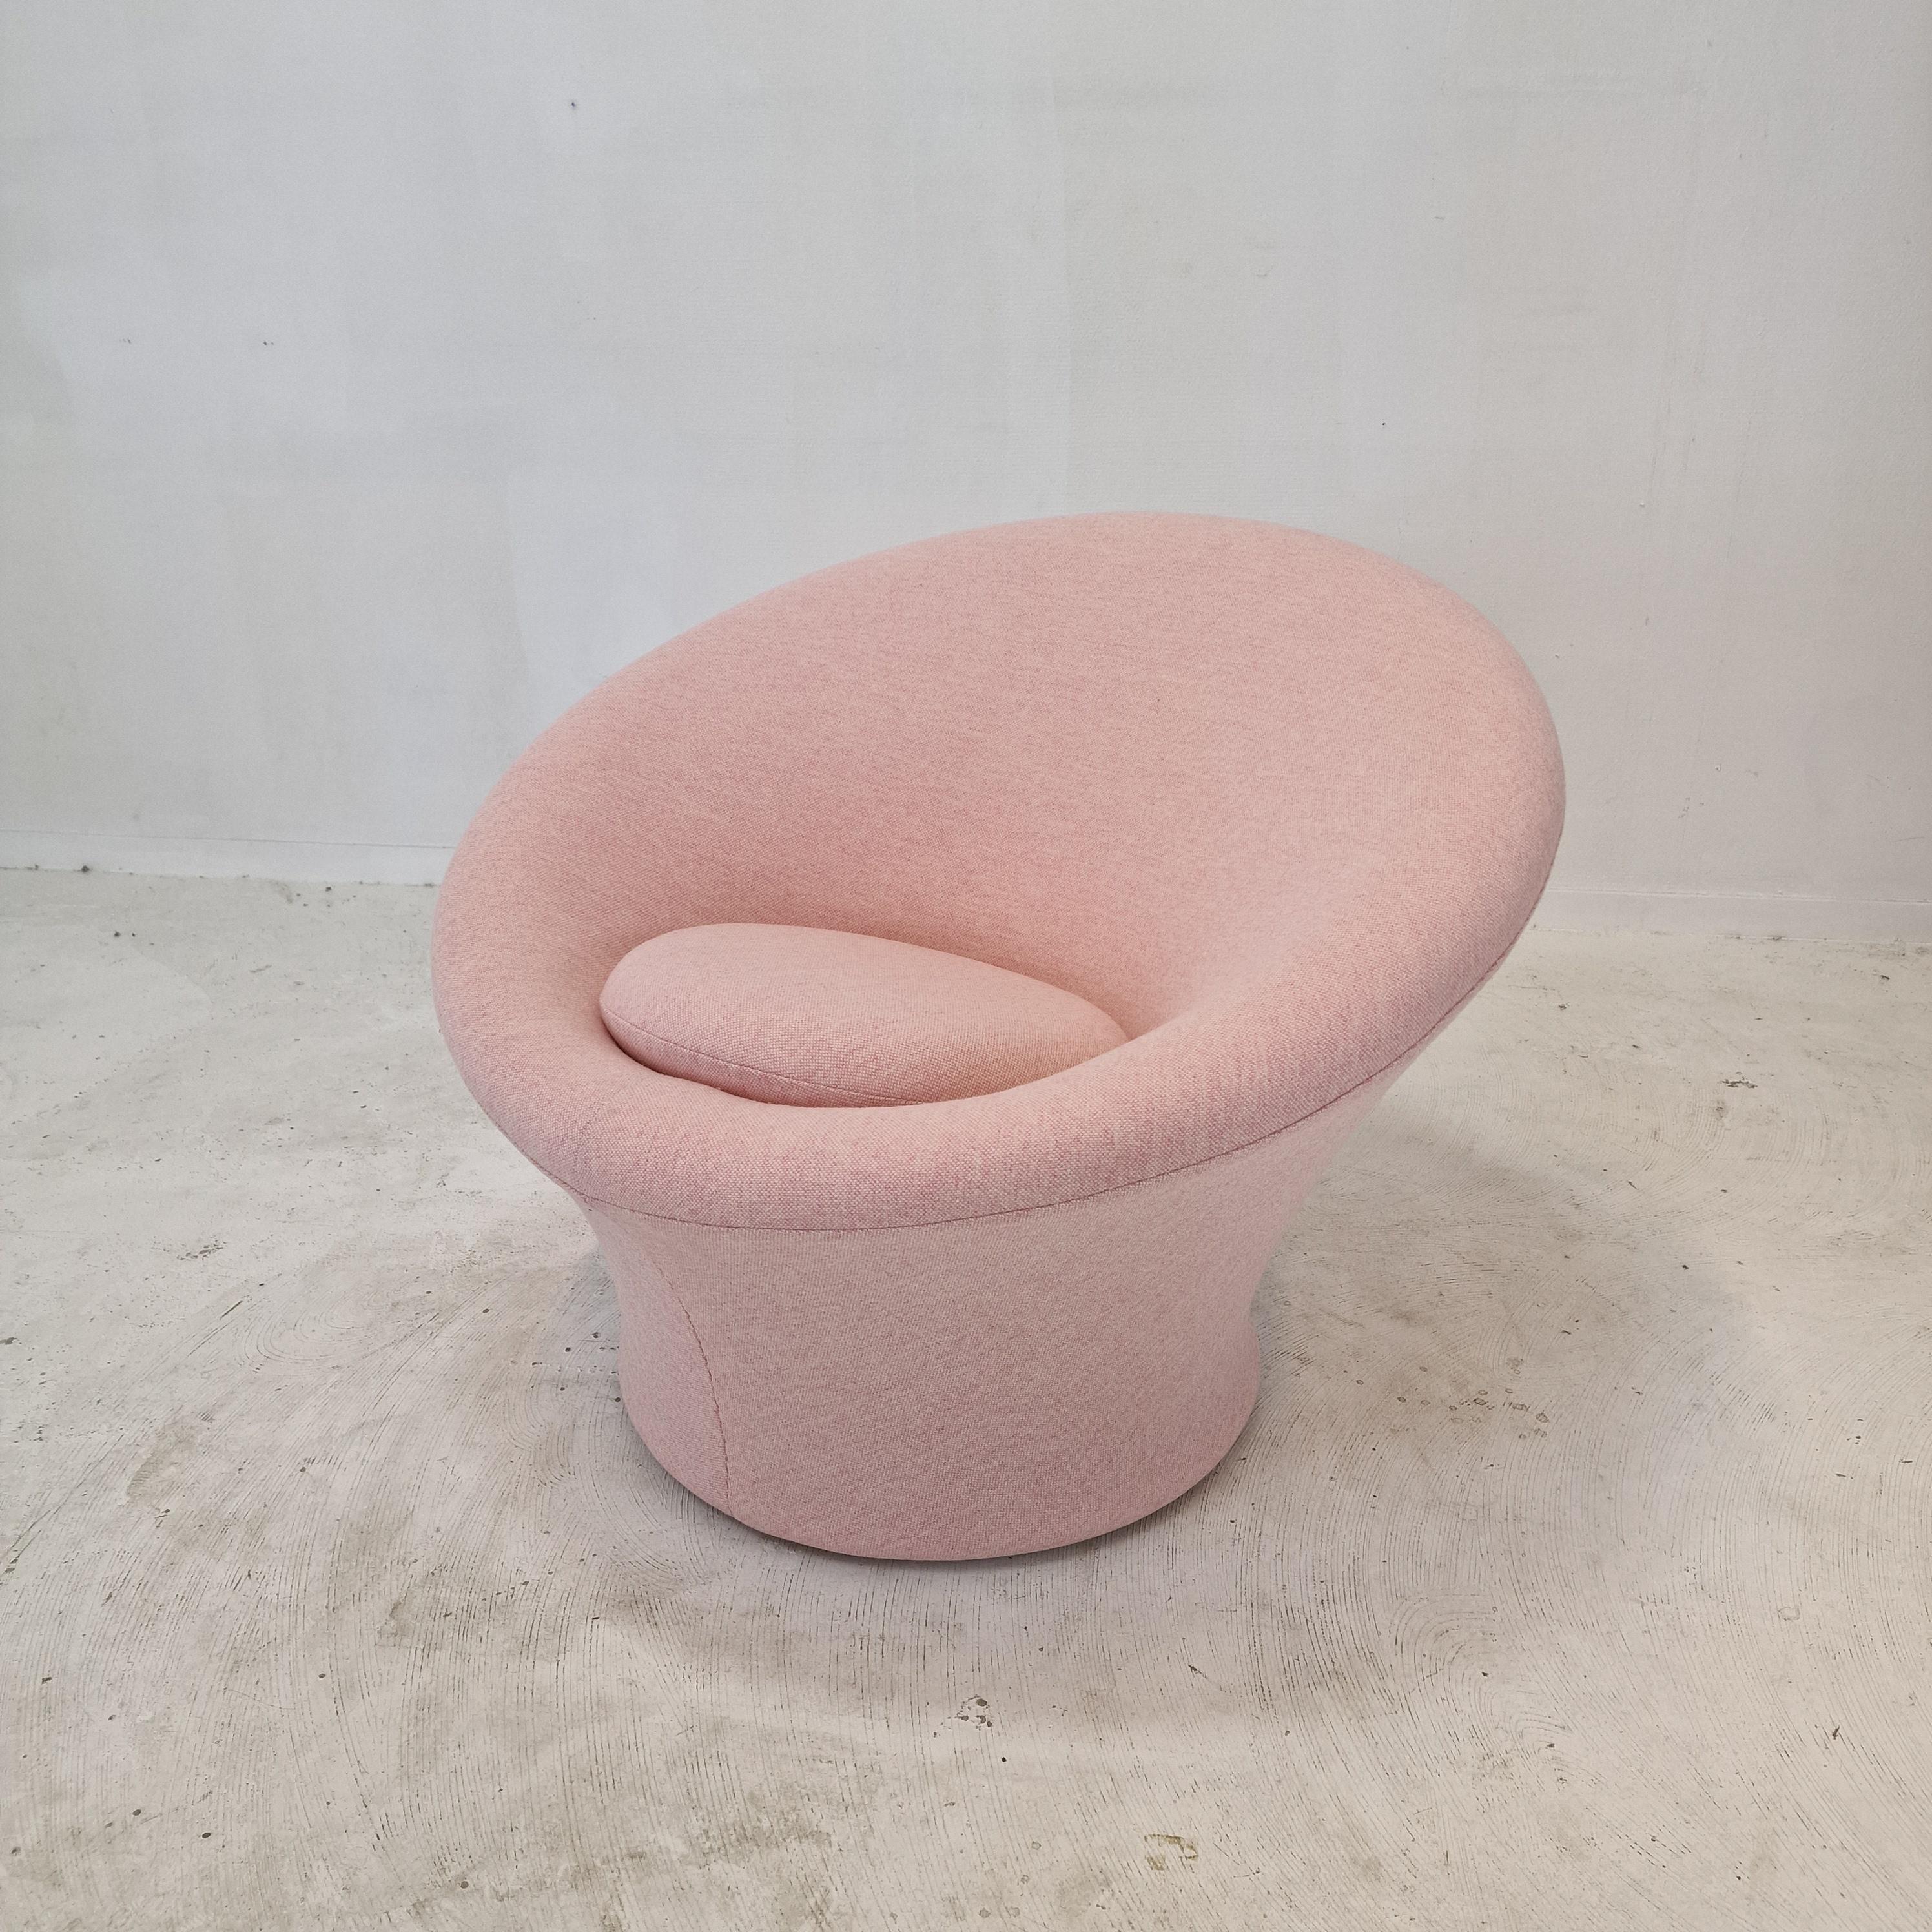 Chaise Artifort Mushroom très confortable et accueillante, conçue par Pierre Paulin dans les années 60. 
Cette chaise particulière a été fabriquée dans les années 80.

Recouvert d'un joli tissu en laine, de couleur rose.

La chaise est